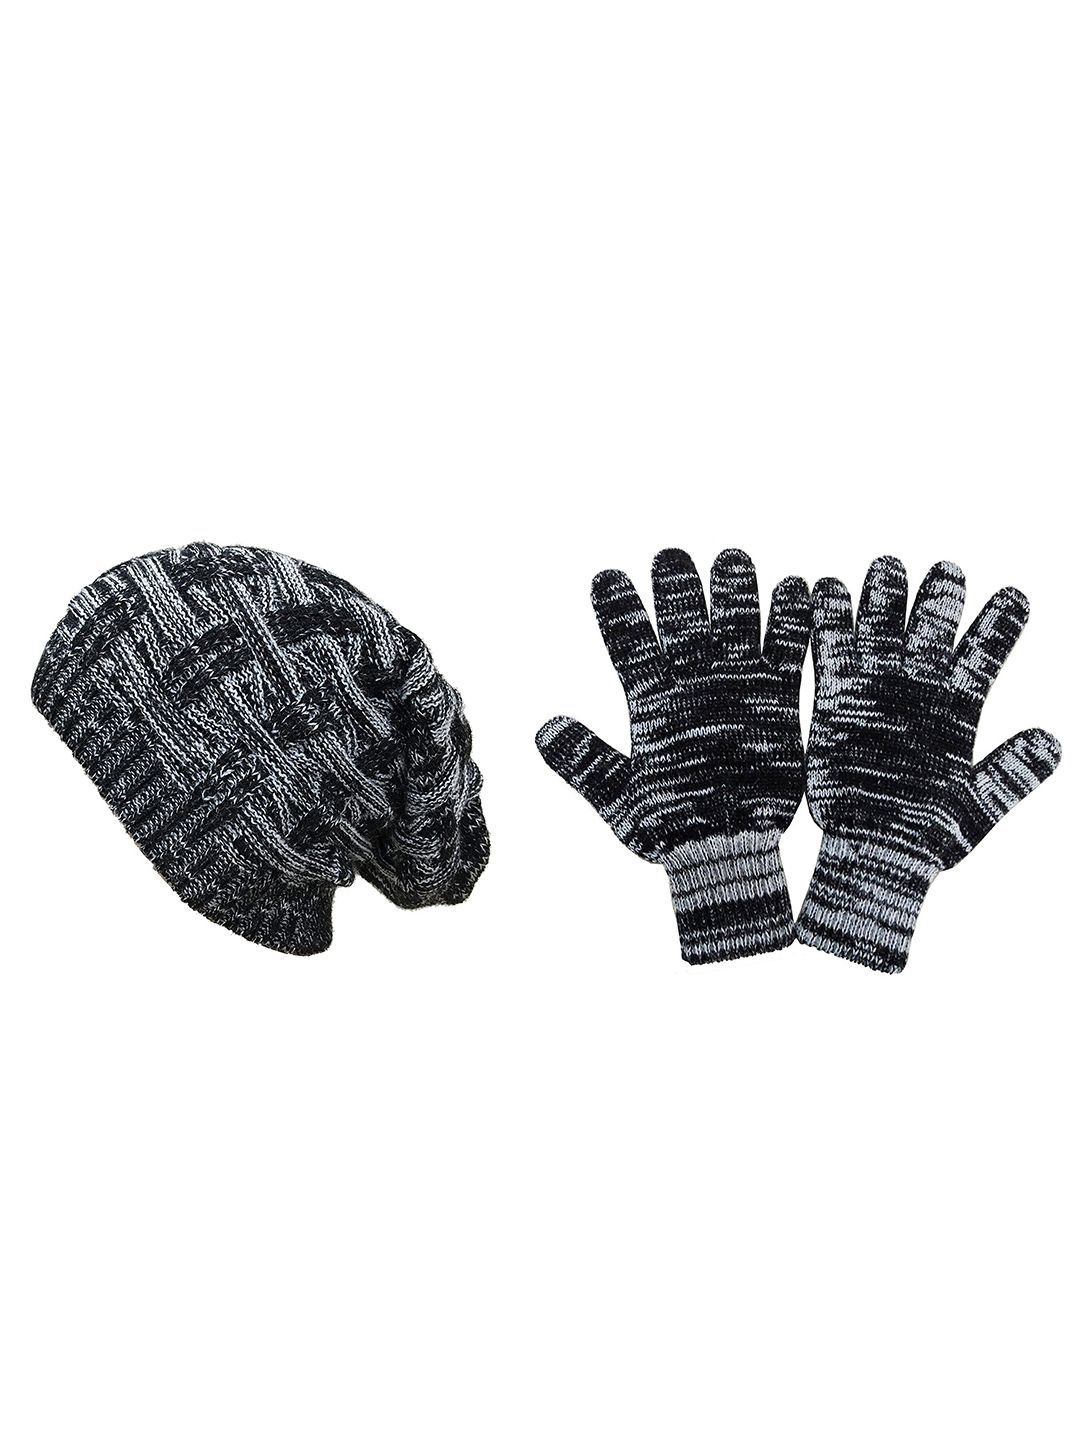 Gajraj Unisex Black & White Knit Woolen Beanie With Gloves Set Price in India